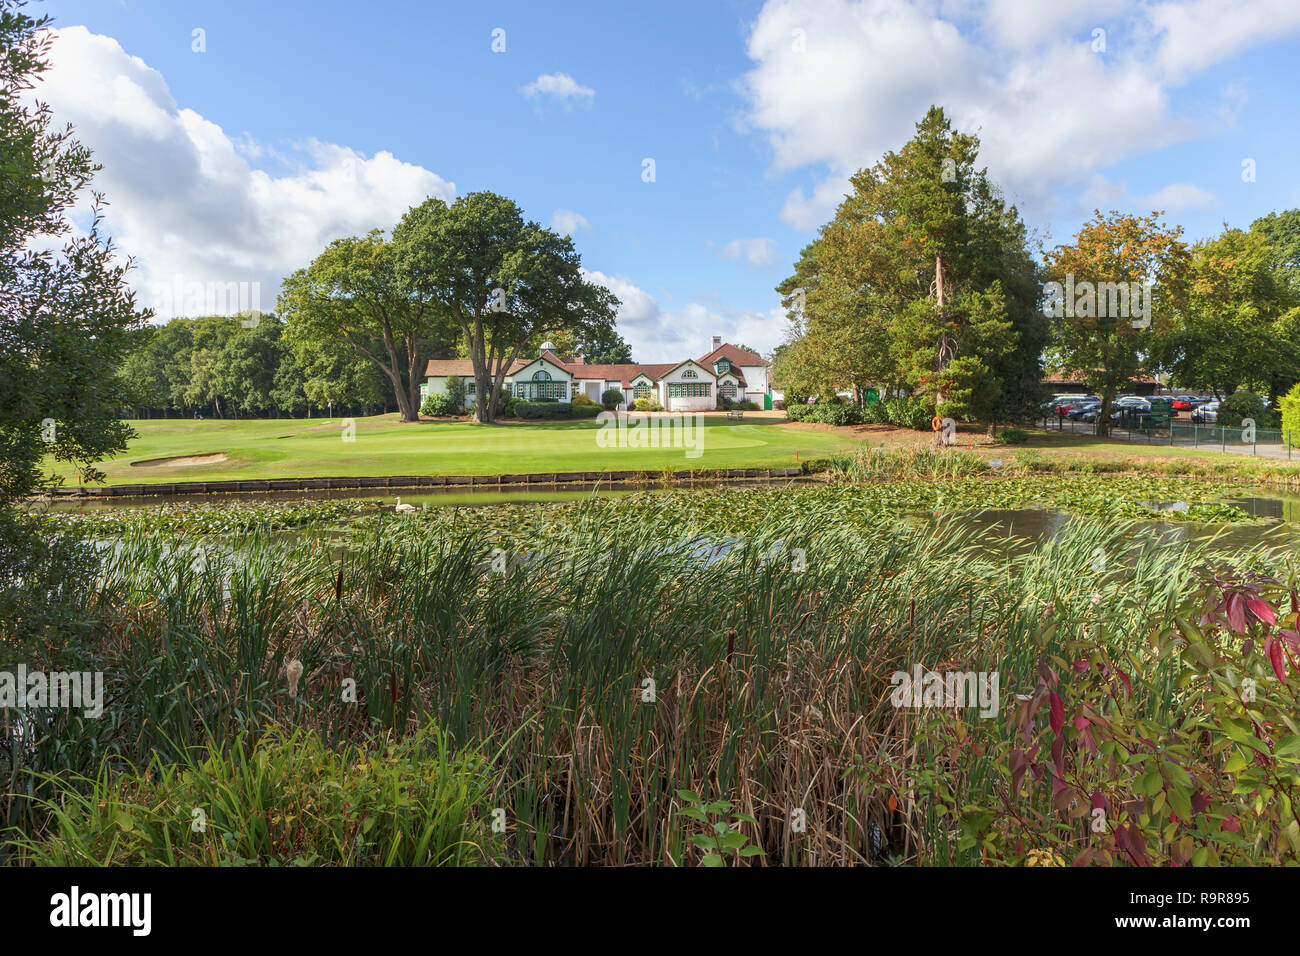 Le mode de vie de loisirs:prestigieux Woking Golf Club à Pond Road, Hook Heath, Woking, Surrey, au sud-est de l'Angleterre, avec clubhouse et motifs sur une journée ensoleillée Banque D'Images